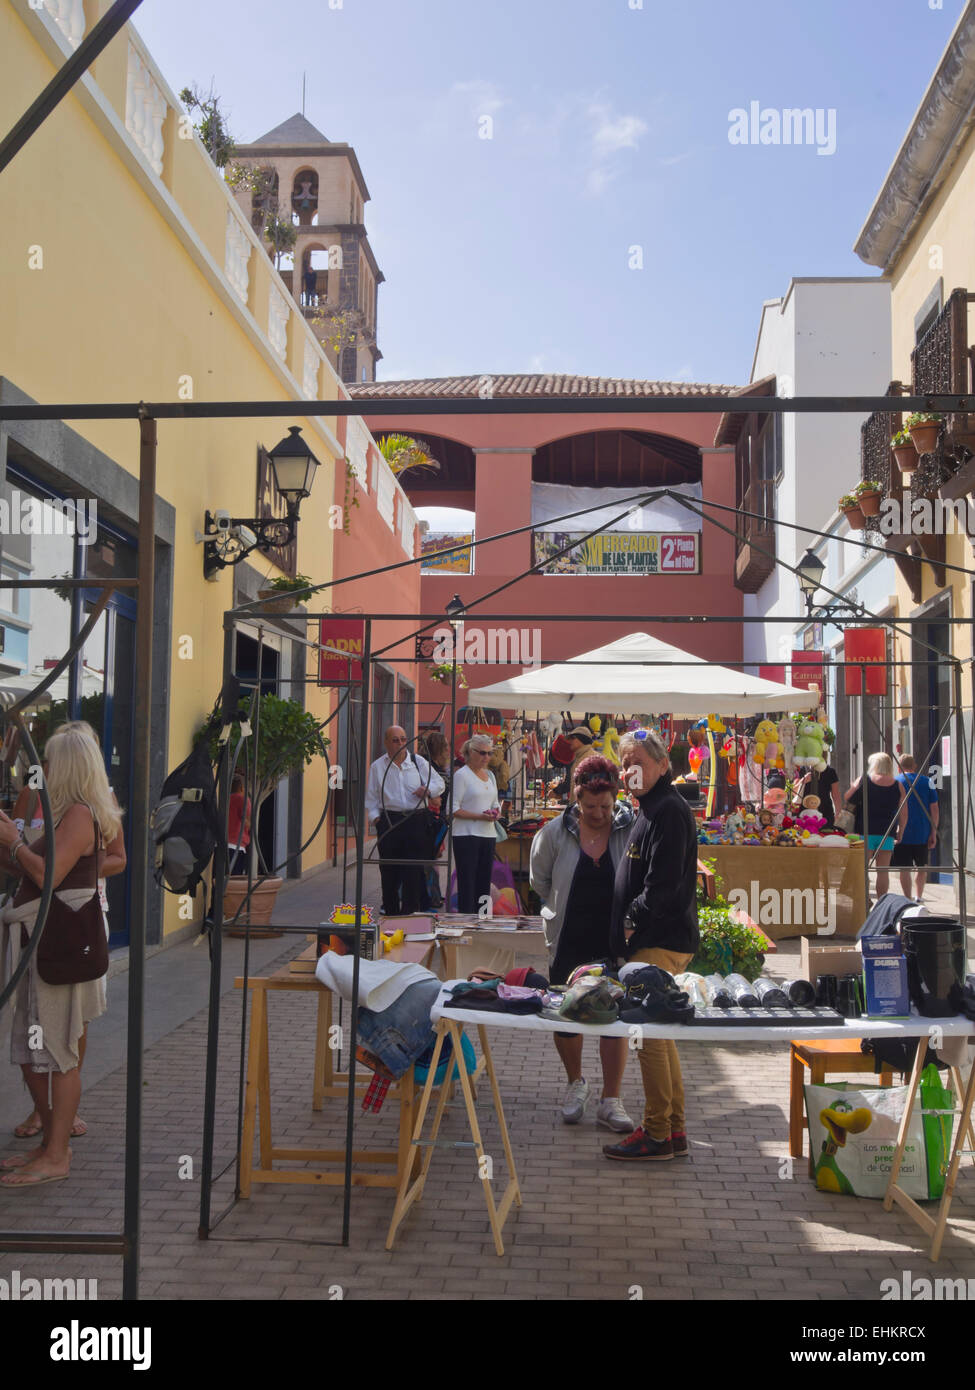 Mercato del sabato in Corralejo a Fuerteventura Isole Canarie Spagna, moderno centro commerciale e il mercato delle pulci e ristoranti combinati Foto Stock